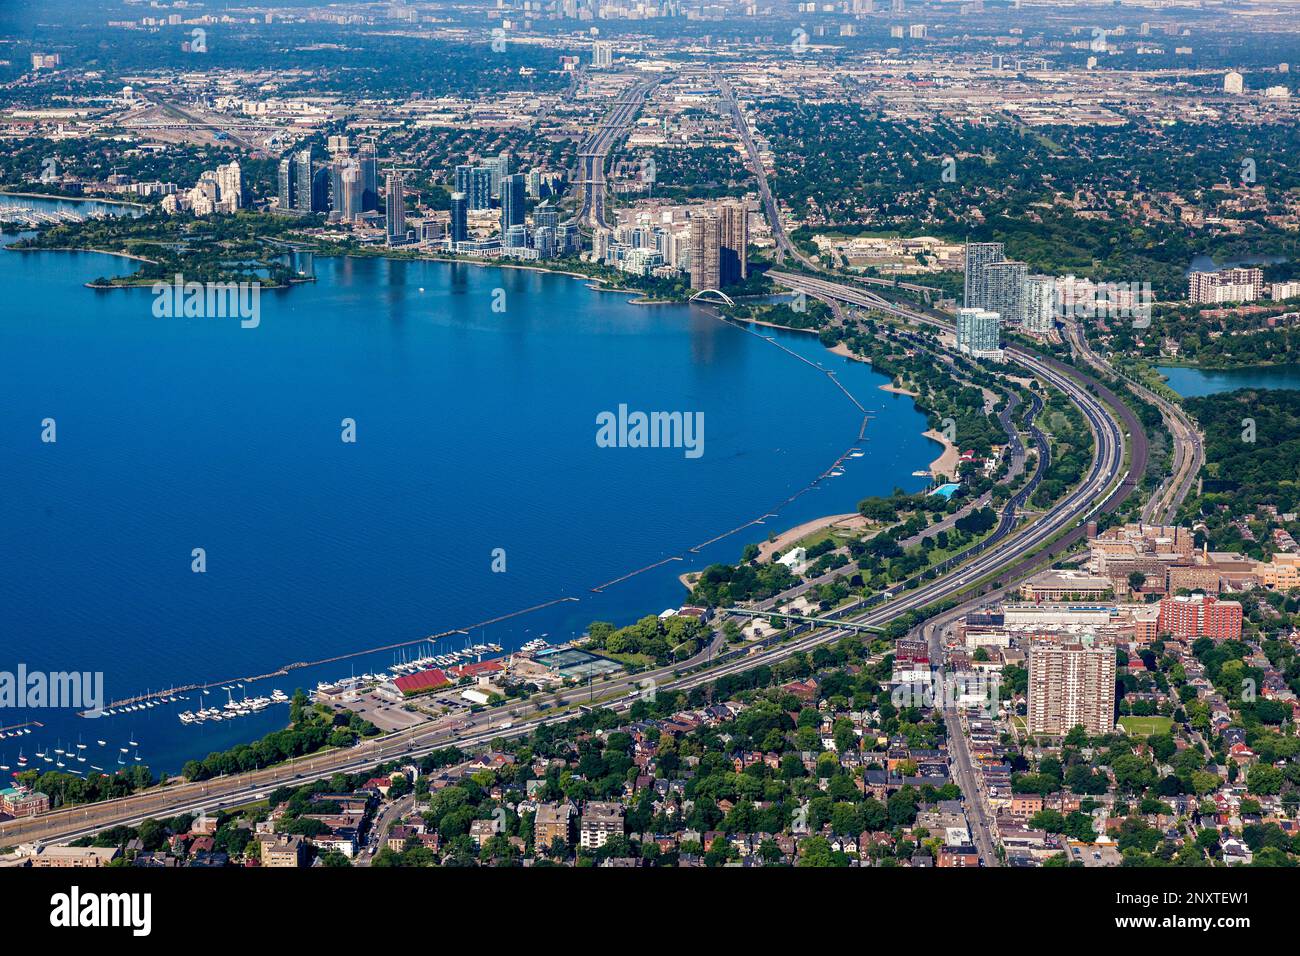 Stock Image mit Blick auf das Ufer und die Humber Bay auf der Westseite von Toronto, Ontario. Stockfoto